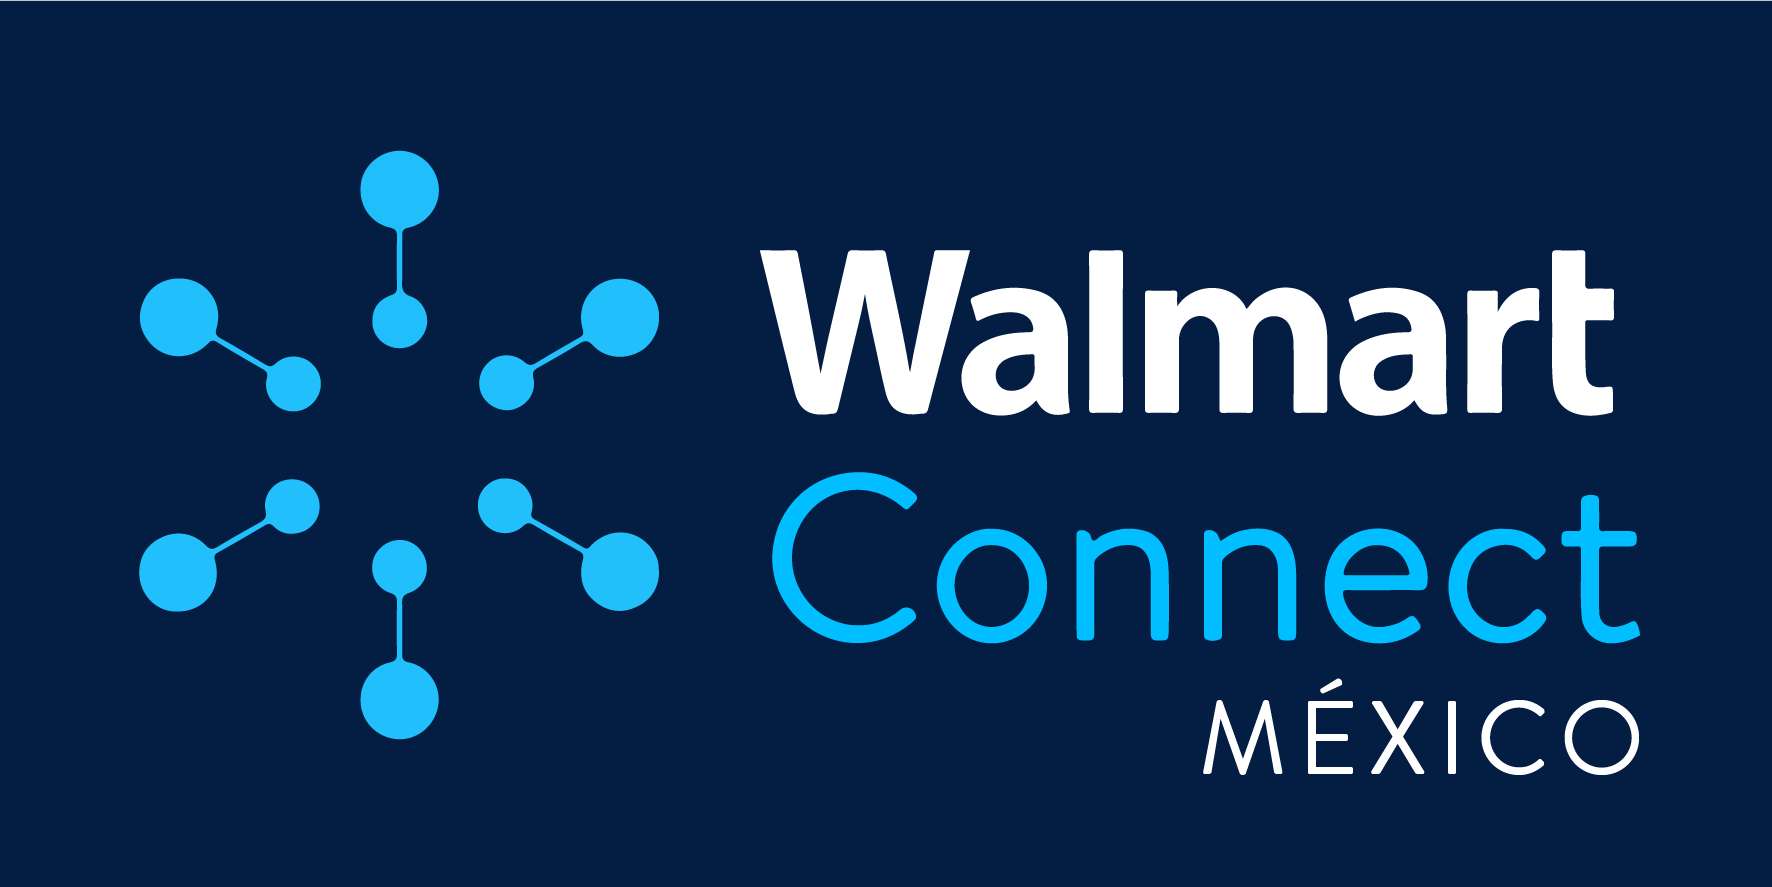 Walmart Connect México lanza propuesta de transformación en publicidad digital.